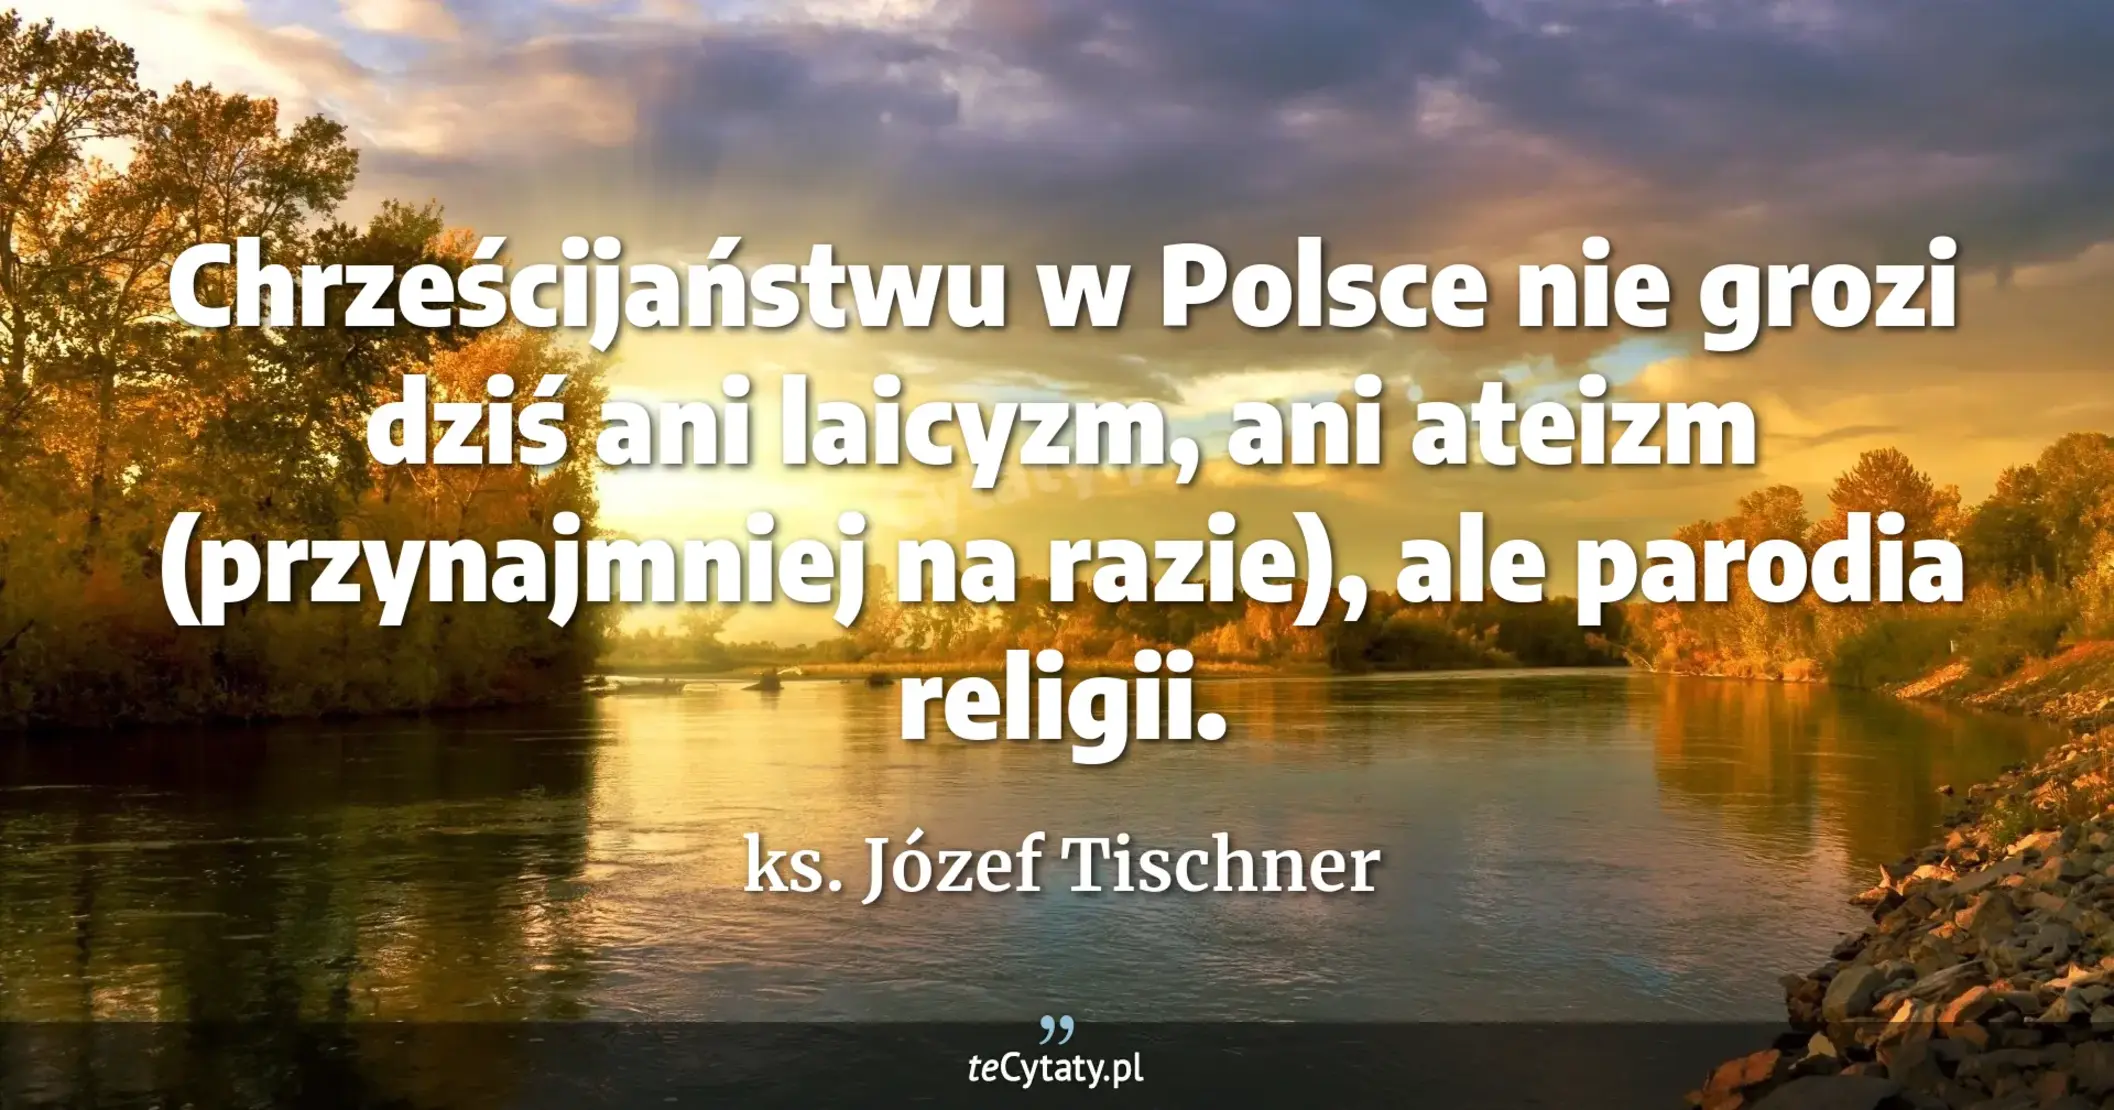 Chrześcijaństwu w Polsce nie grozi dziś ani laicyzm, ani ateizm (przynajmniej na razie), ale parodia religii. - ks. Józef Tischner